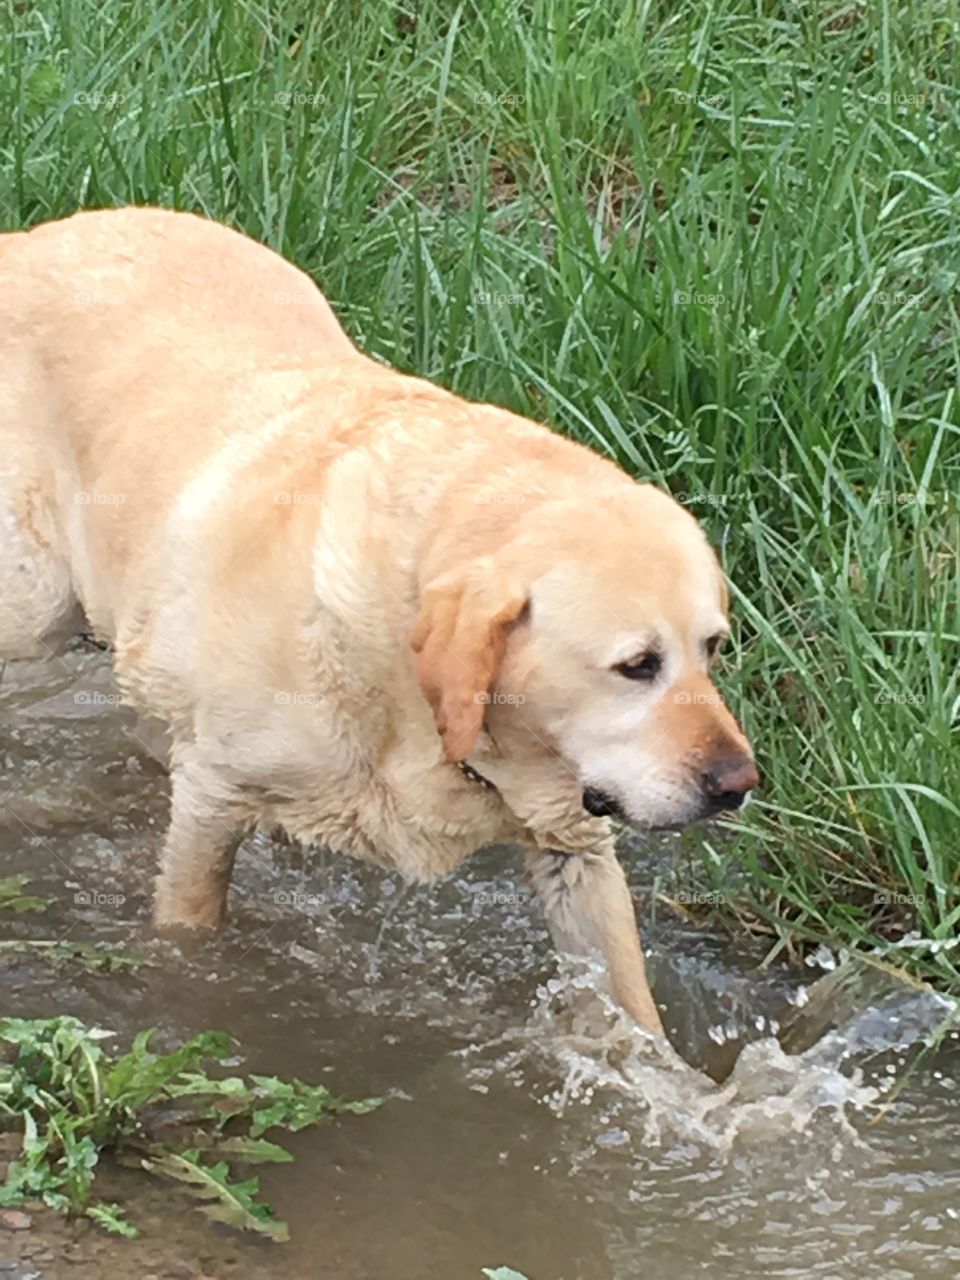 A dog walking in stream